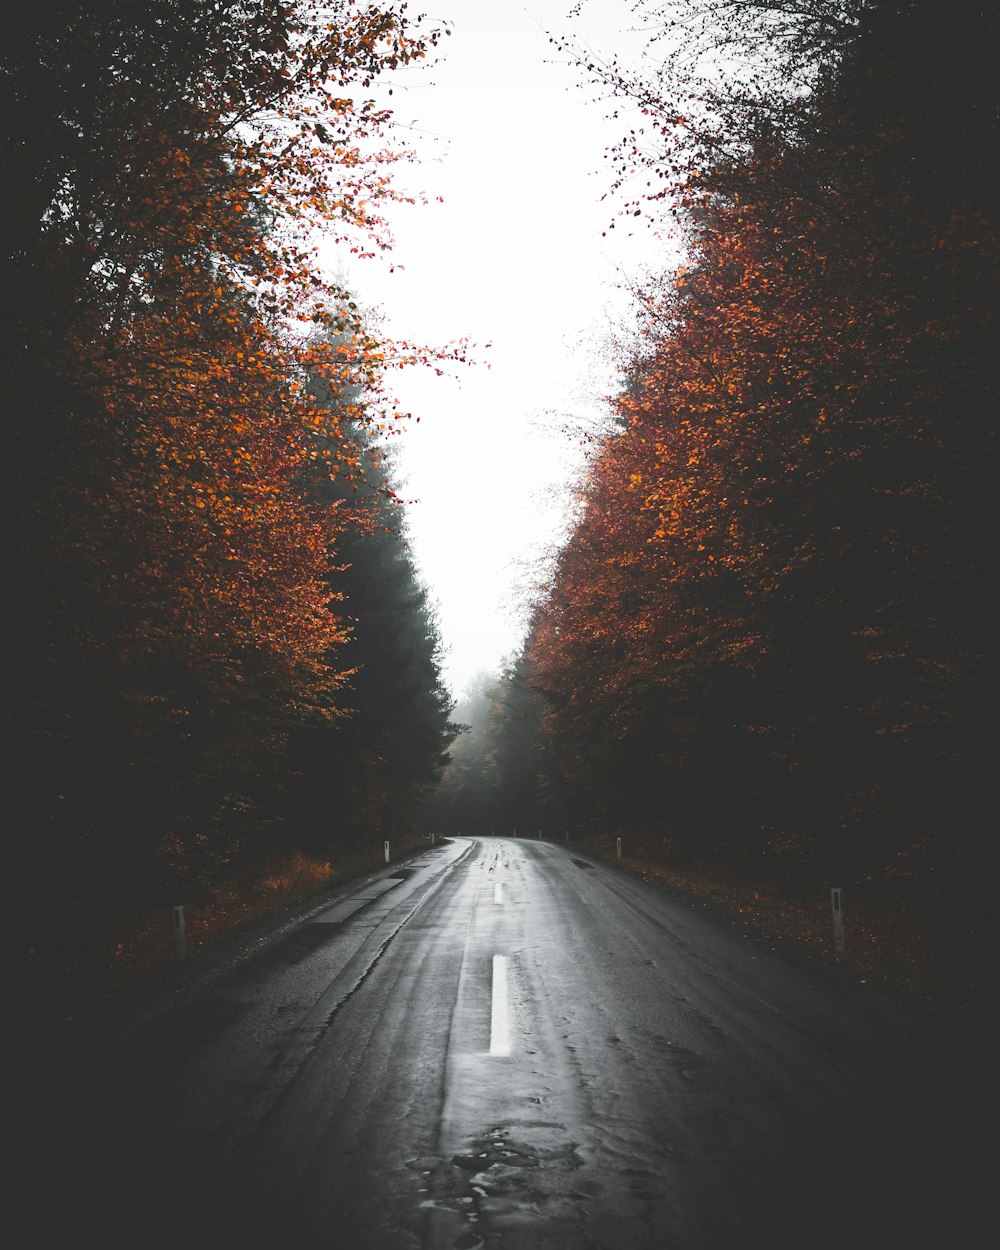 empty wet road between trees